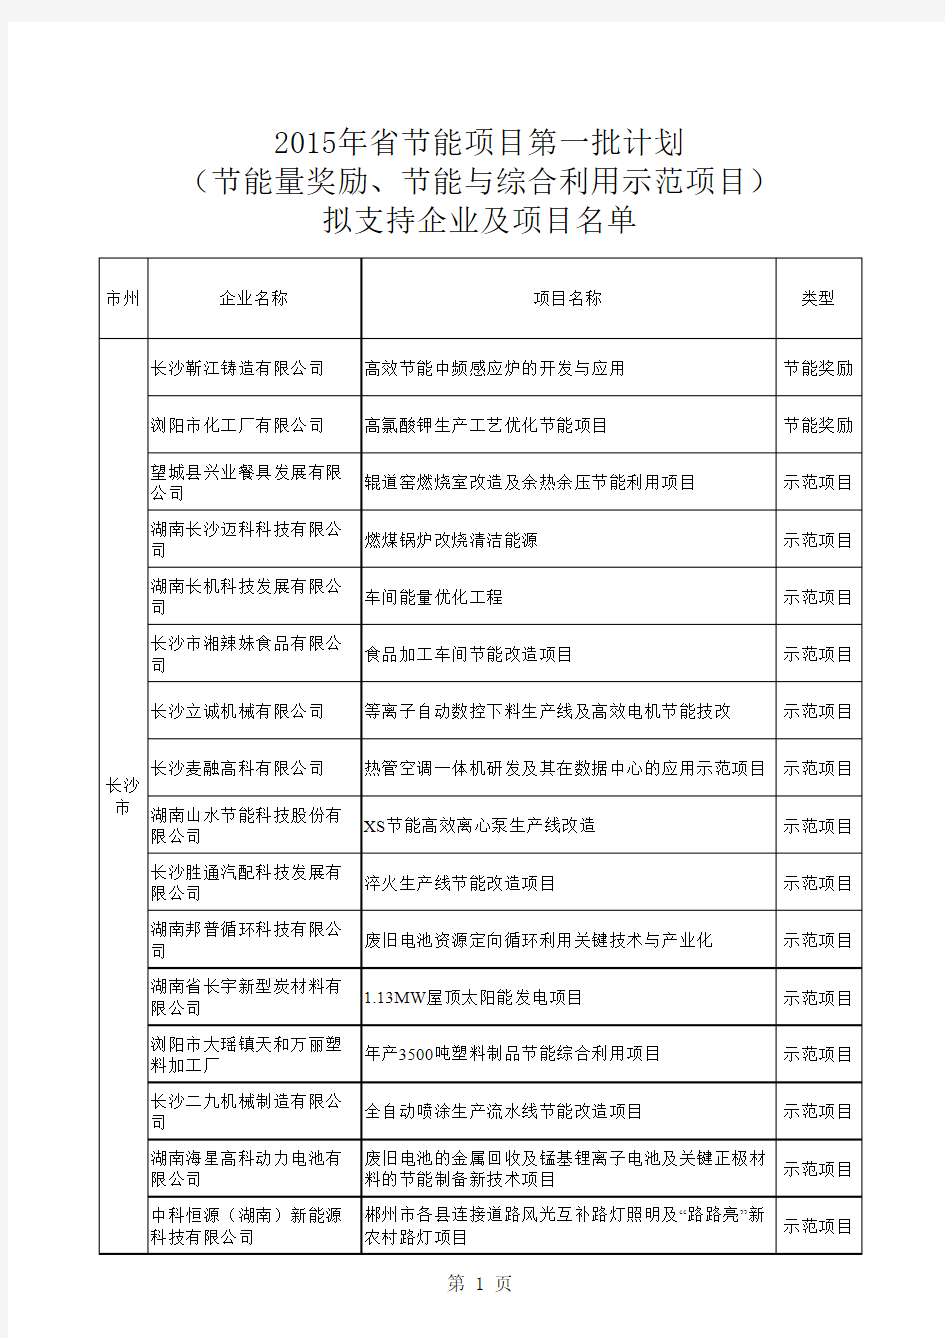 2015年湖南省节能项目第一批计划(节能量奖励和节能与综合利用示范项目)拟支持企业及项目名单